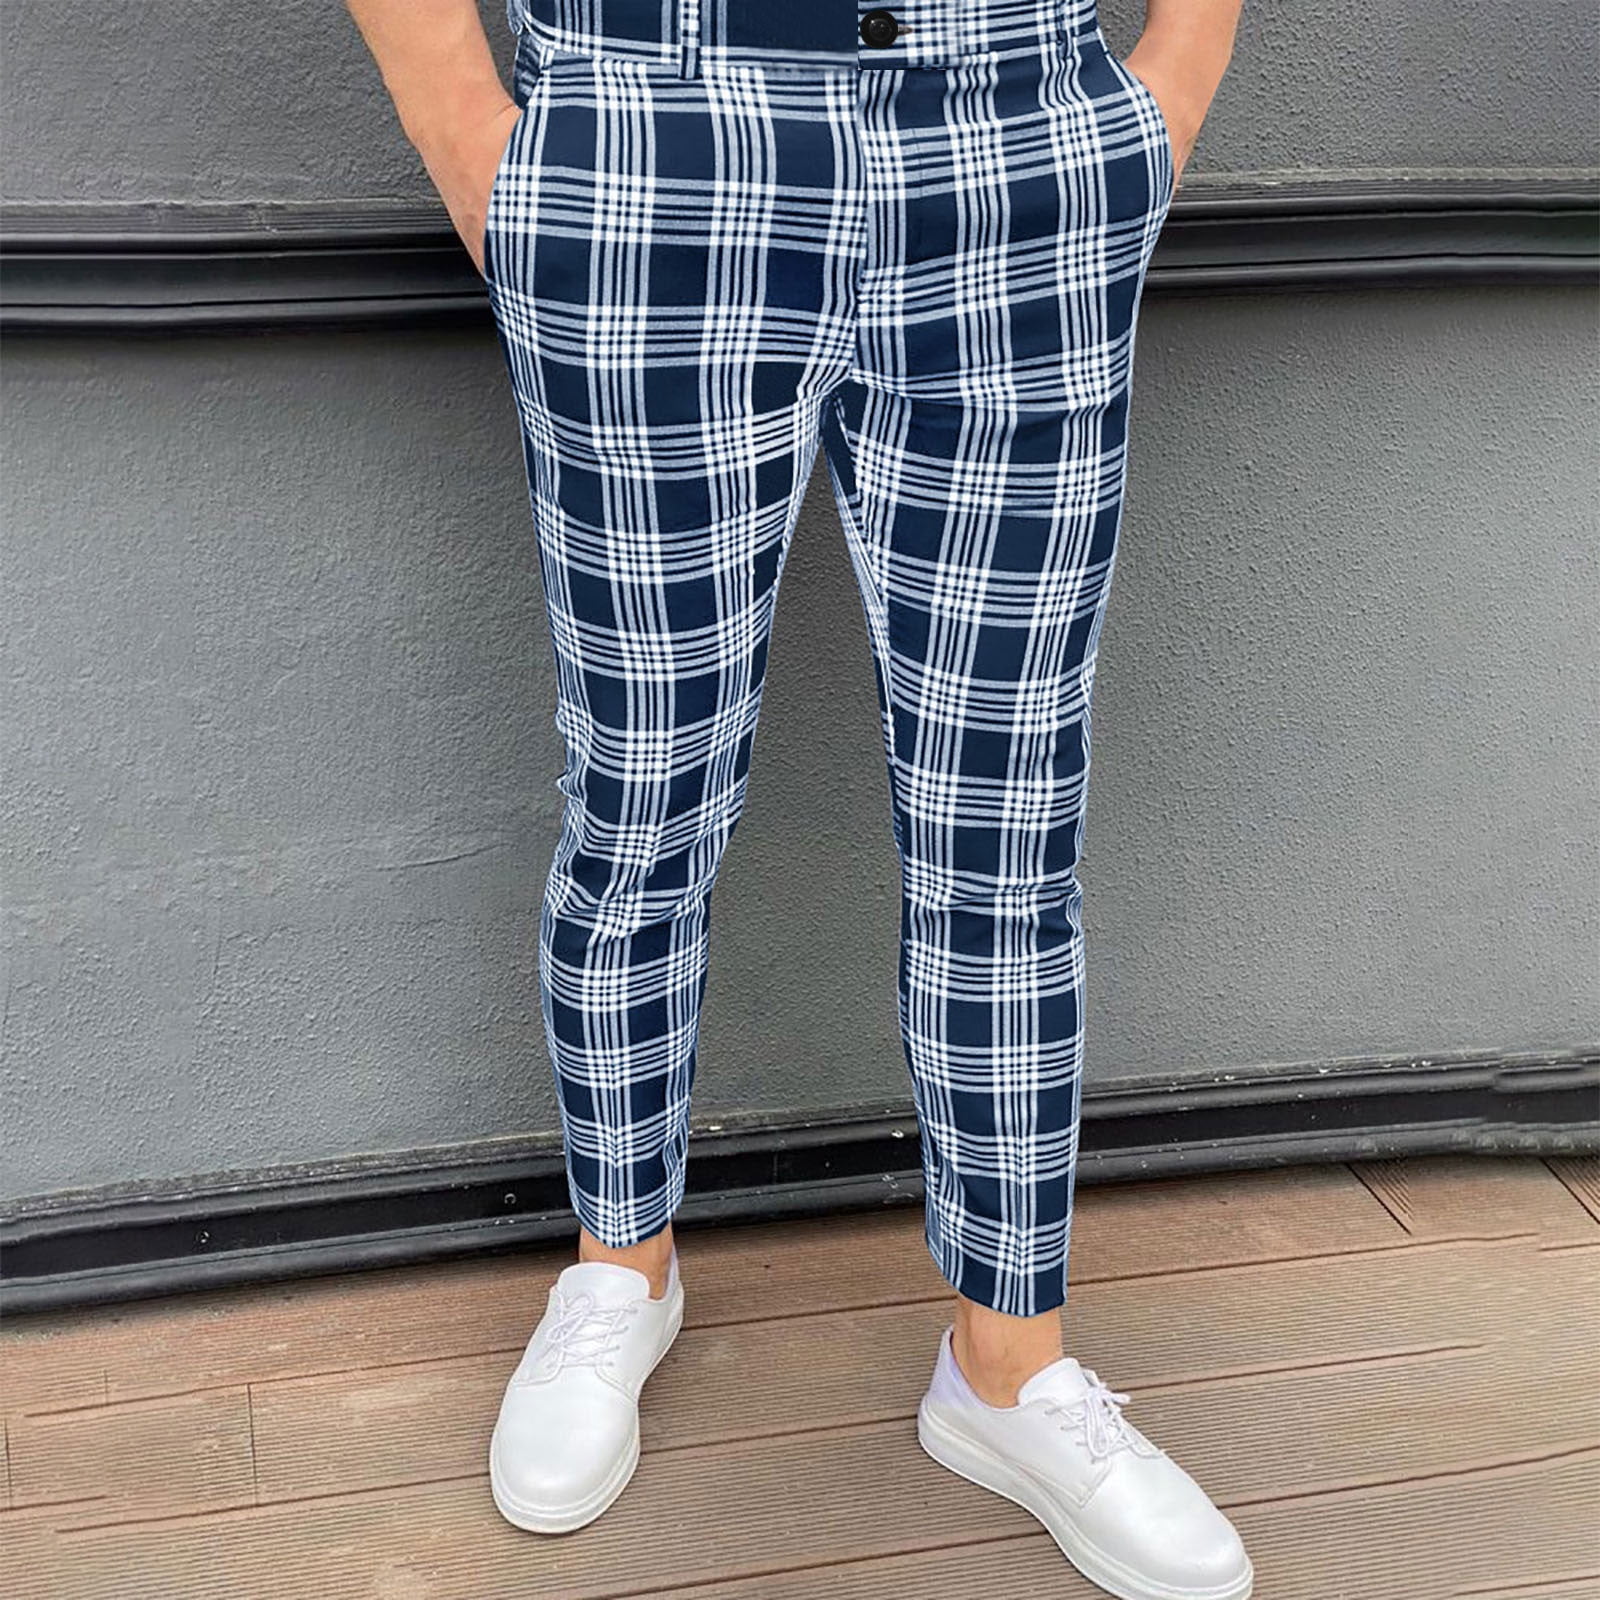 Pajama Pants for Men - 3 Pack Pajama Bottoms - Cotton Blend Flannel Plaid  Lounge Pants, Comfortable PJ Pants